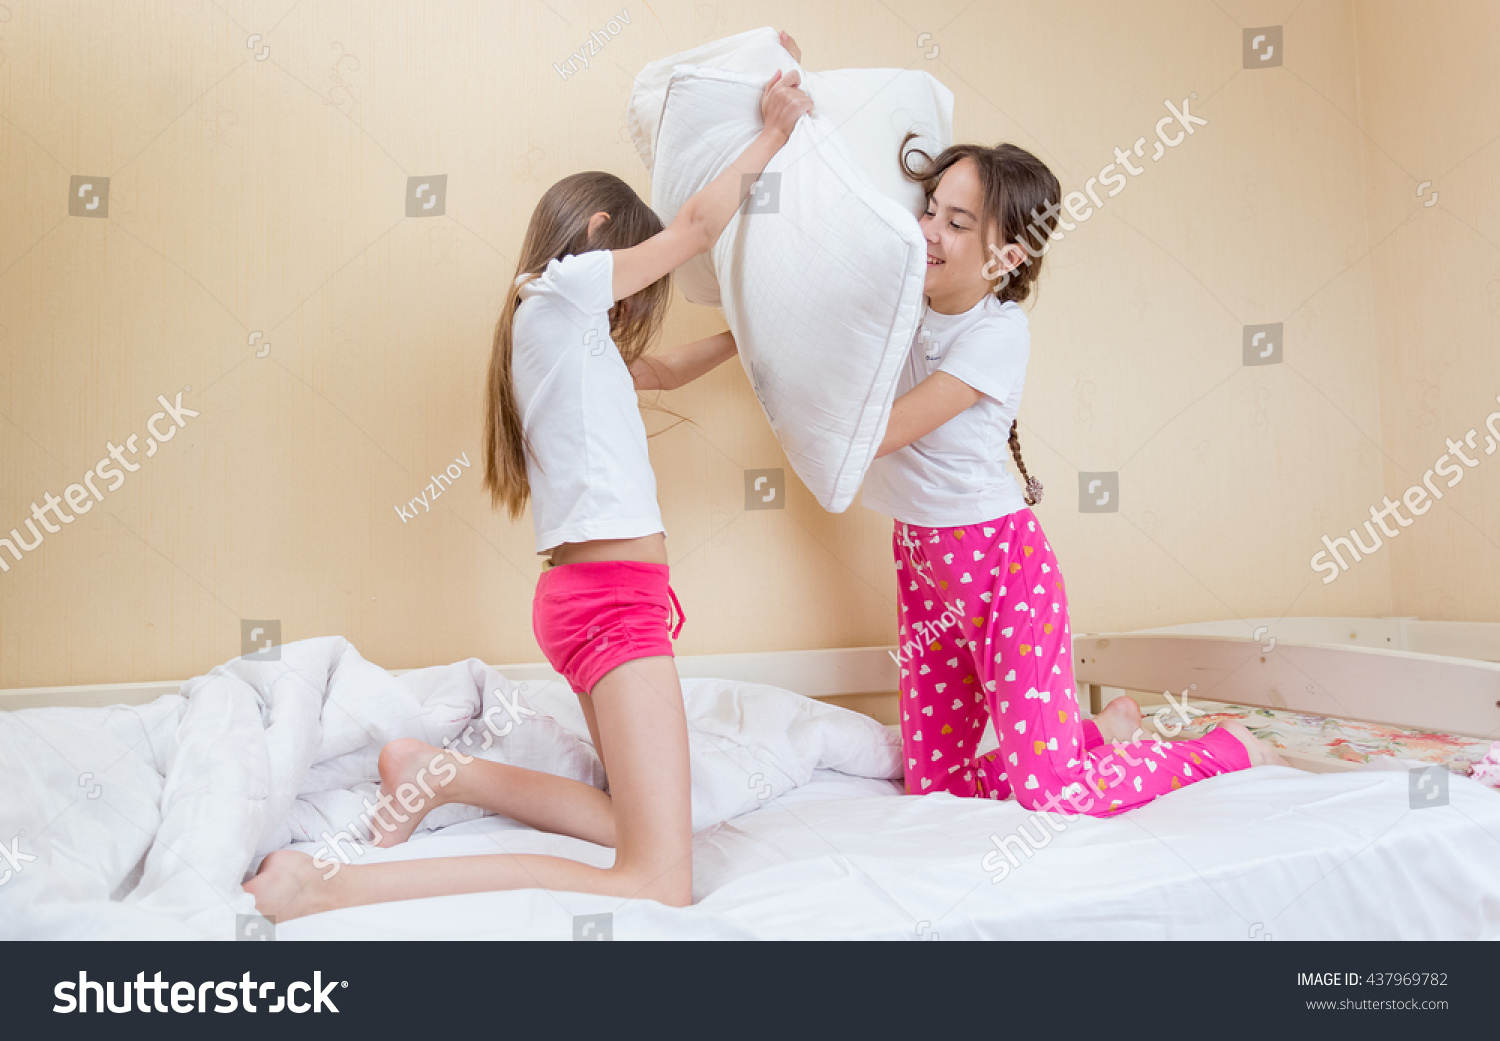 Сестра в пижаме